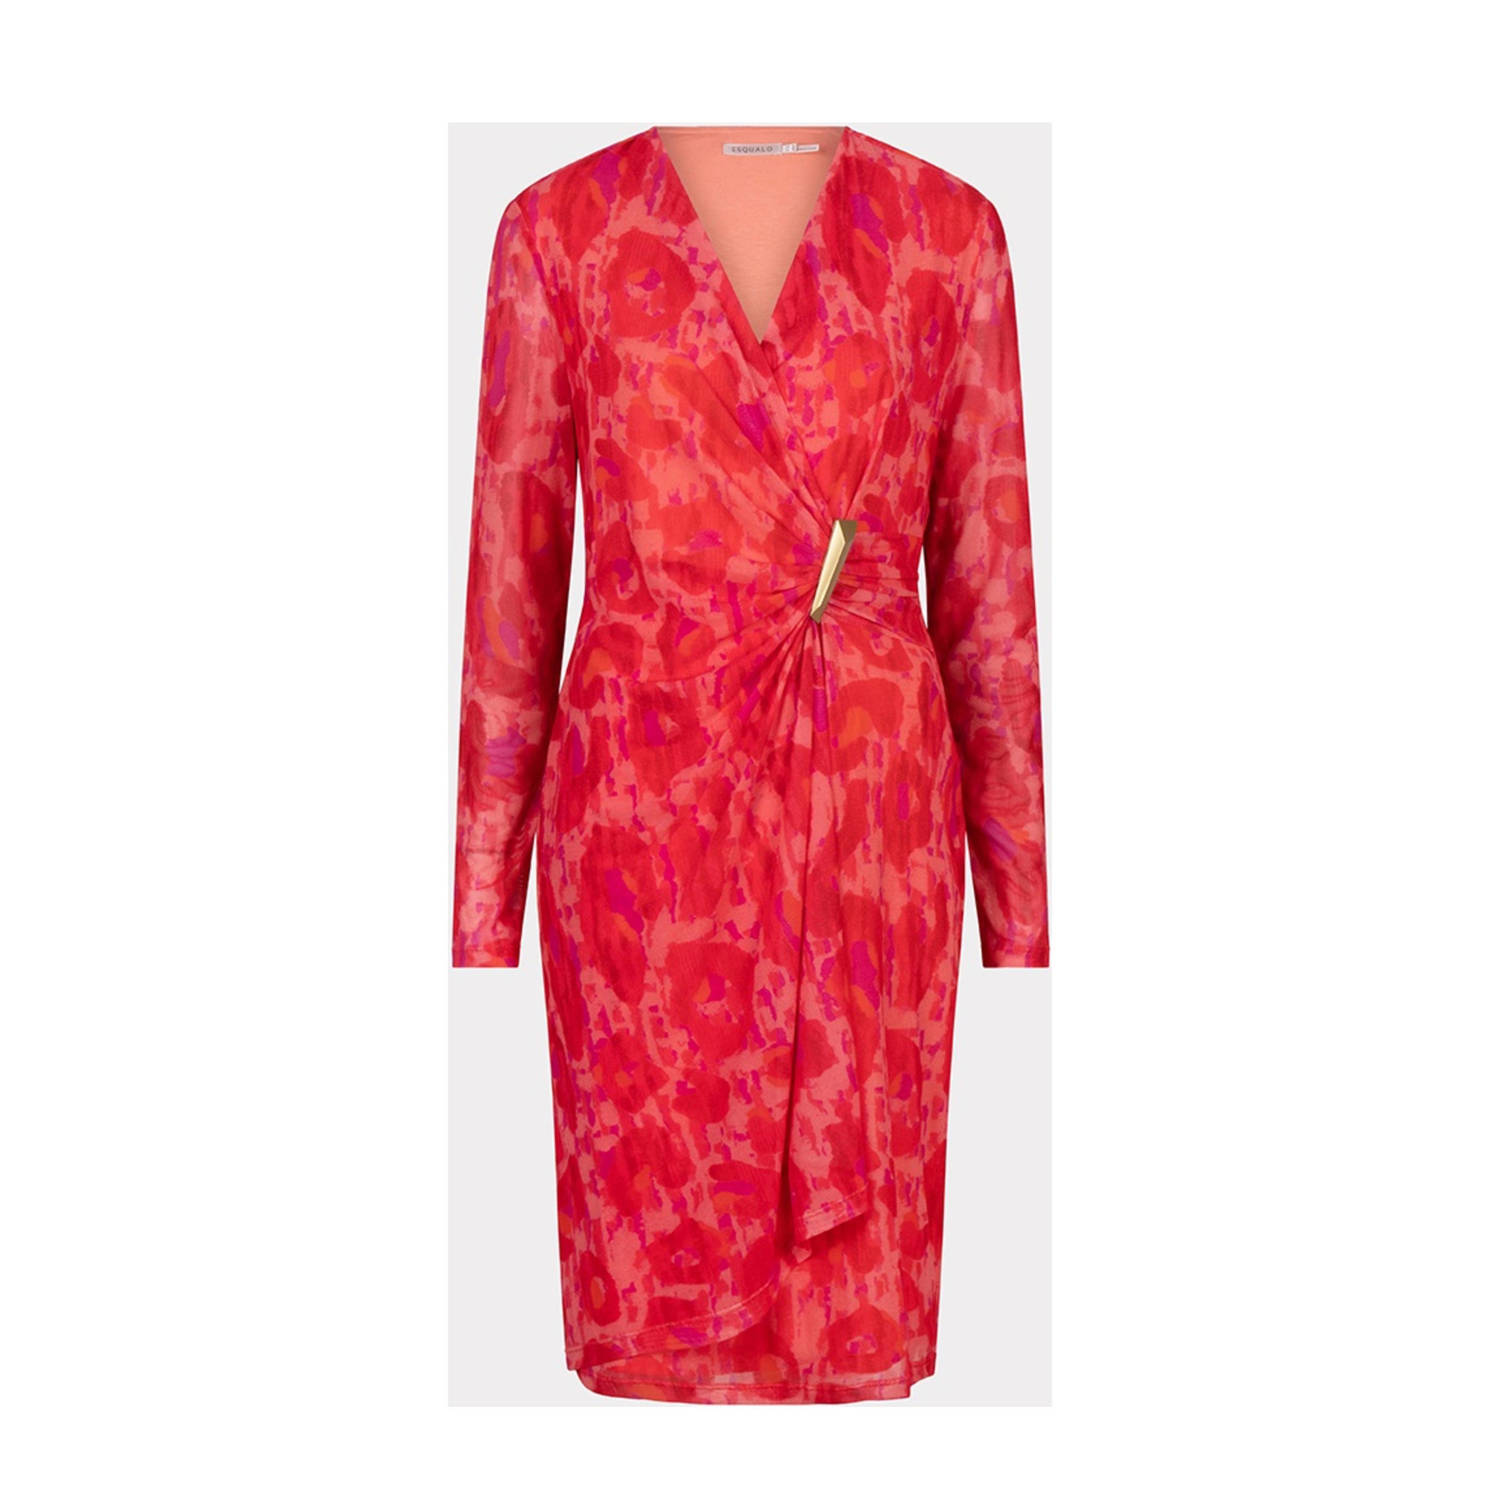 Esqualo jurk met all over print roze rood